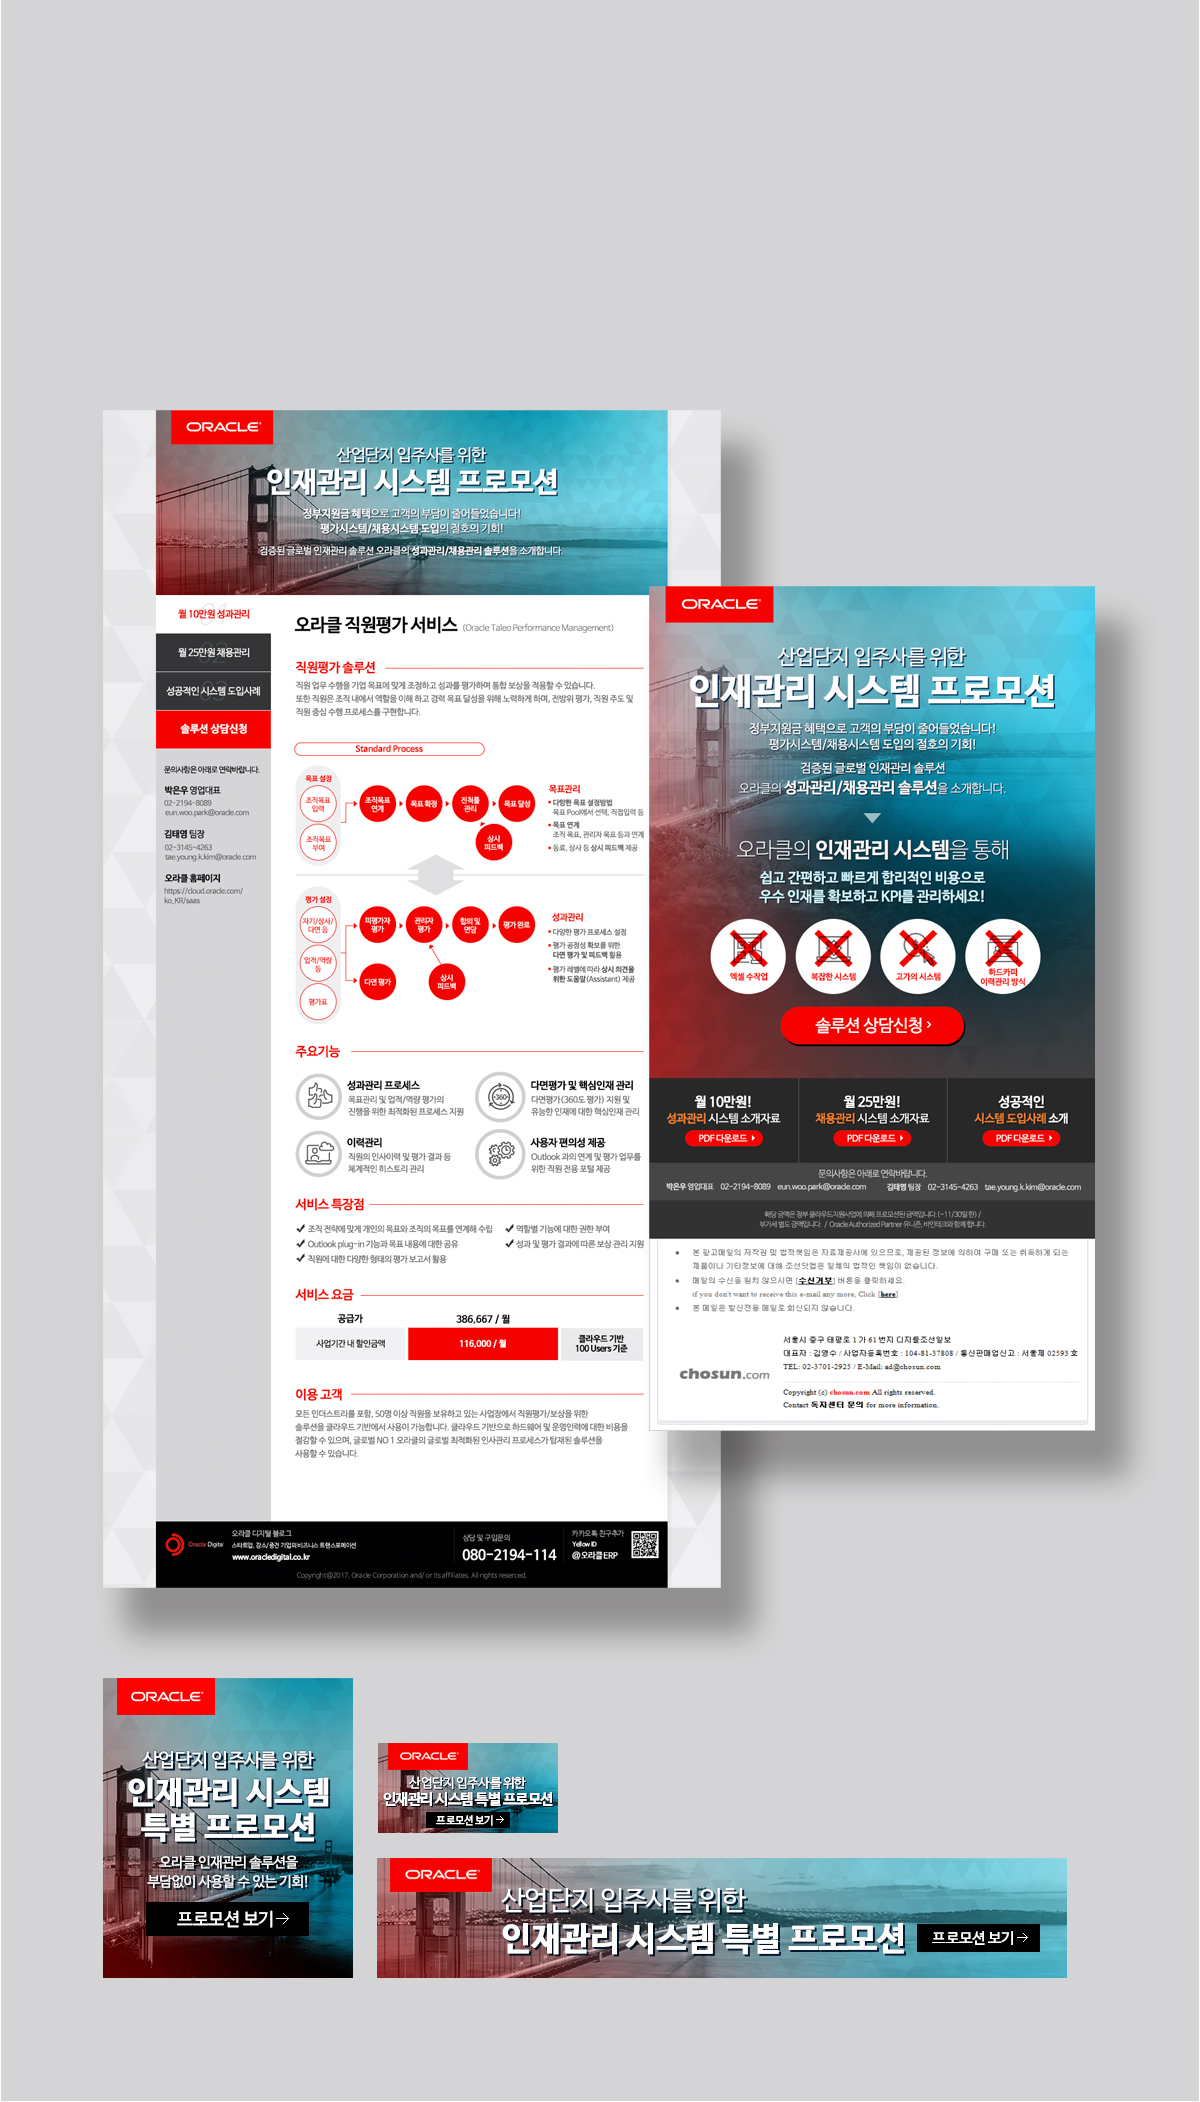 ORACLE KOREA 산업단지 프로모션 세부 이미지